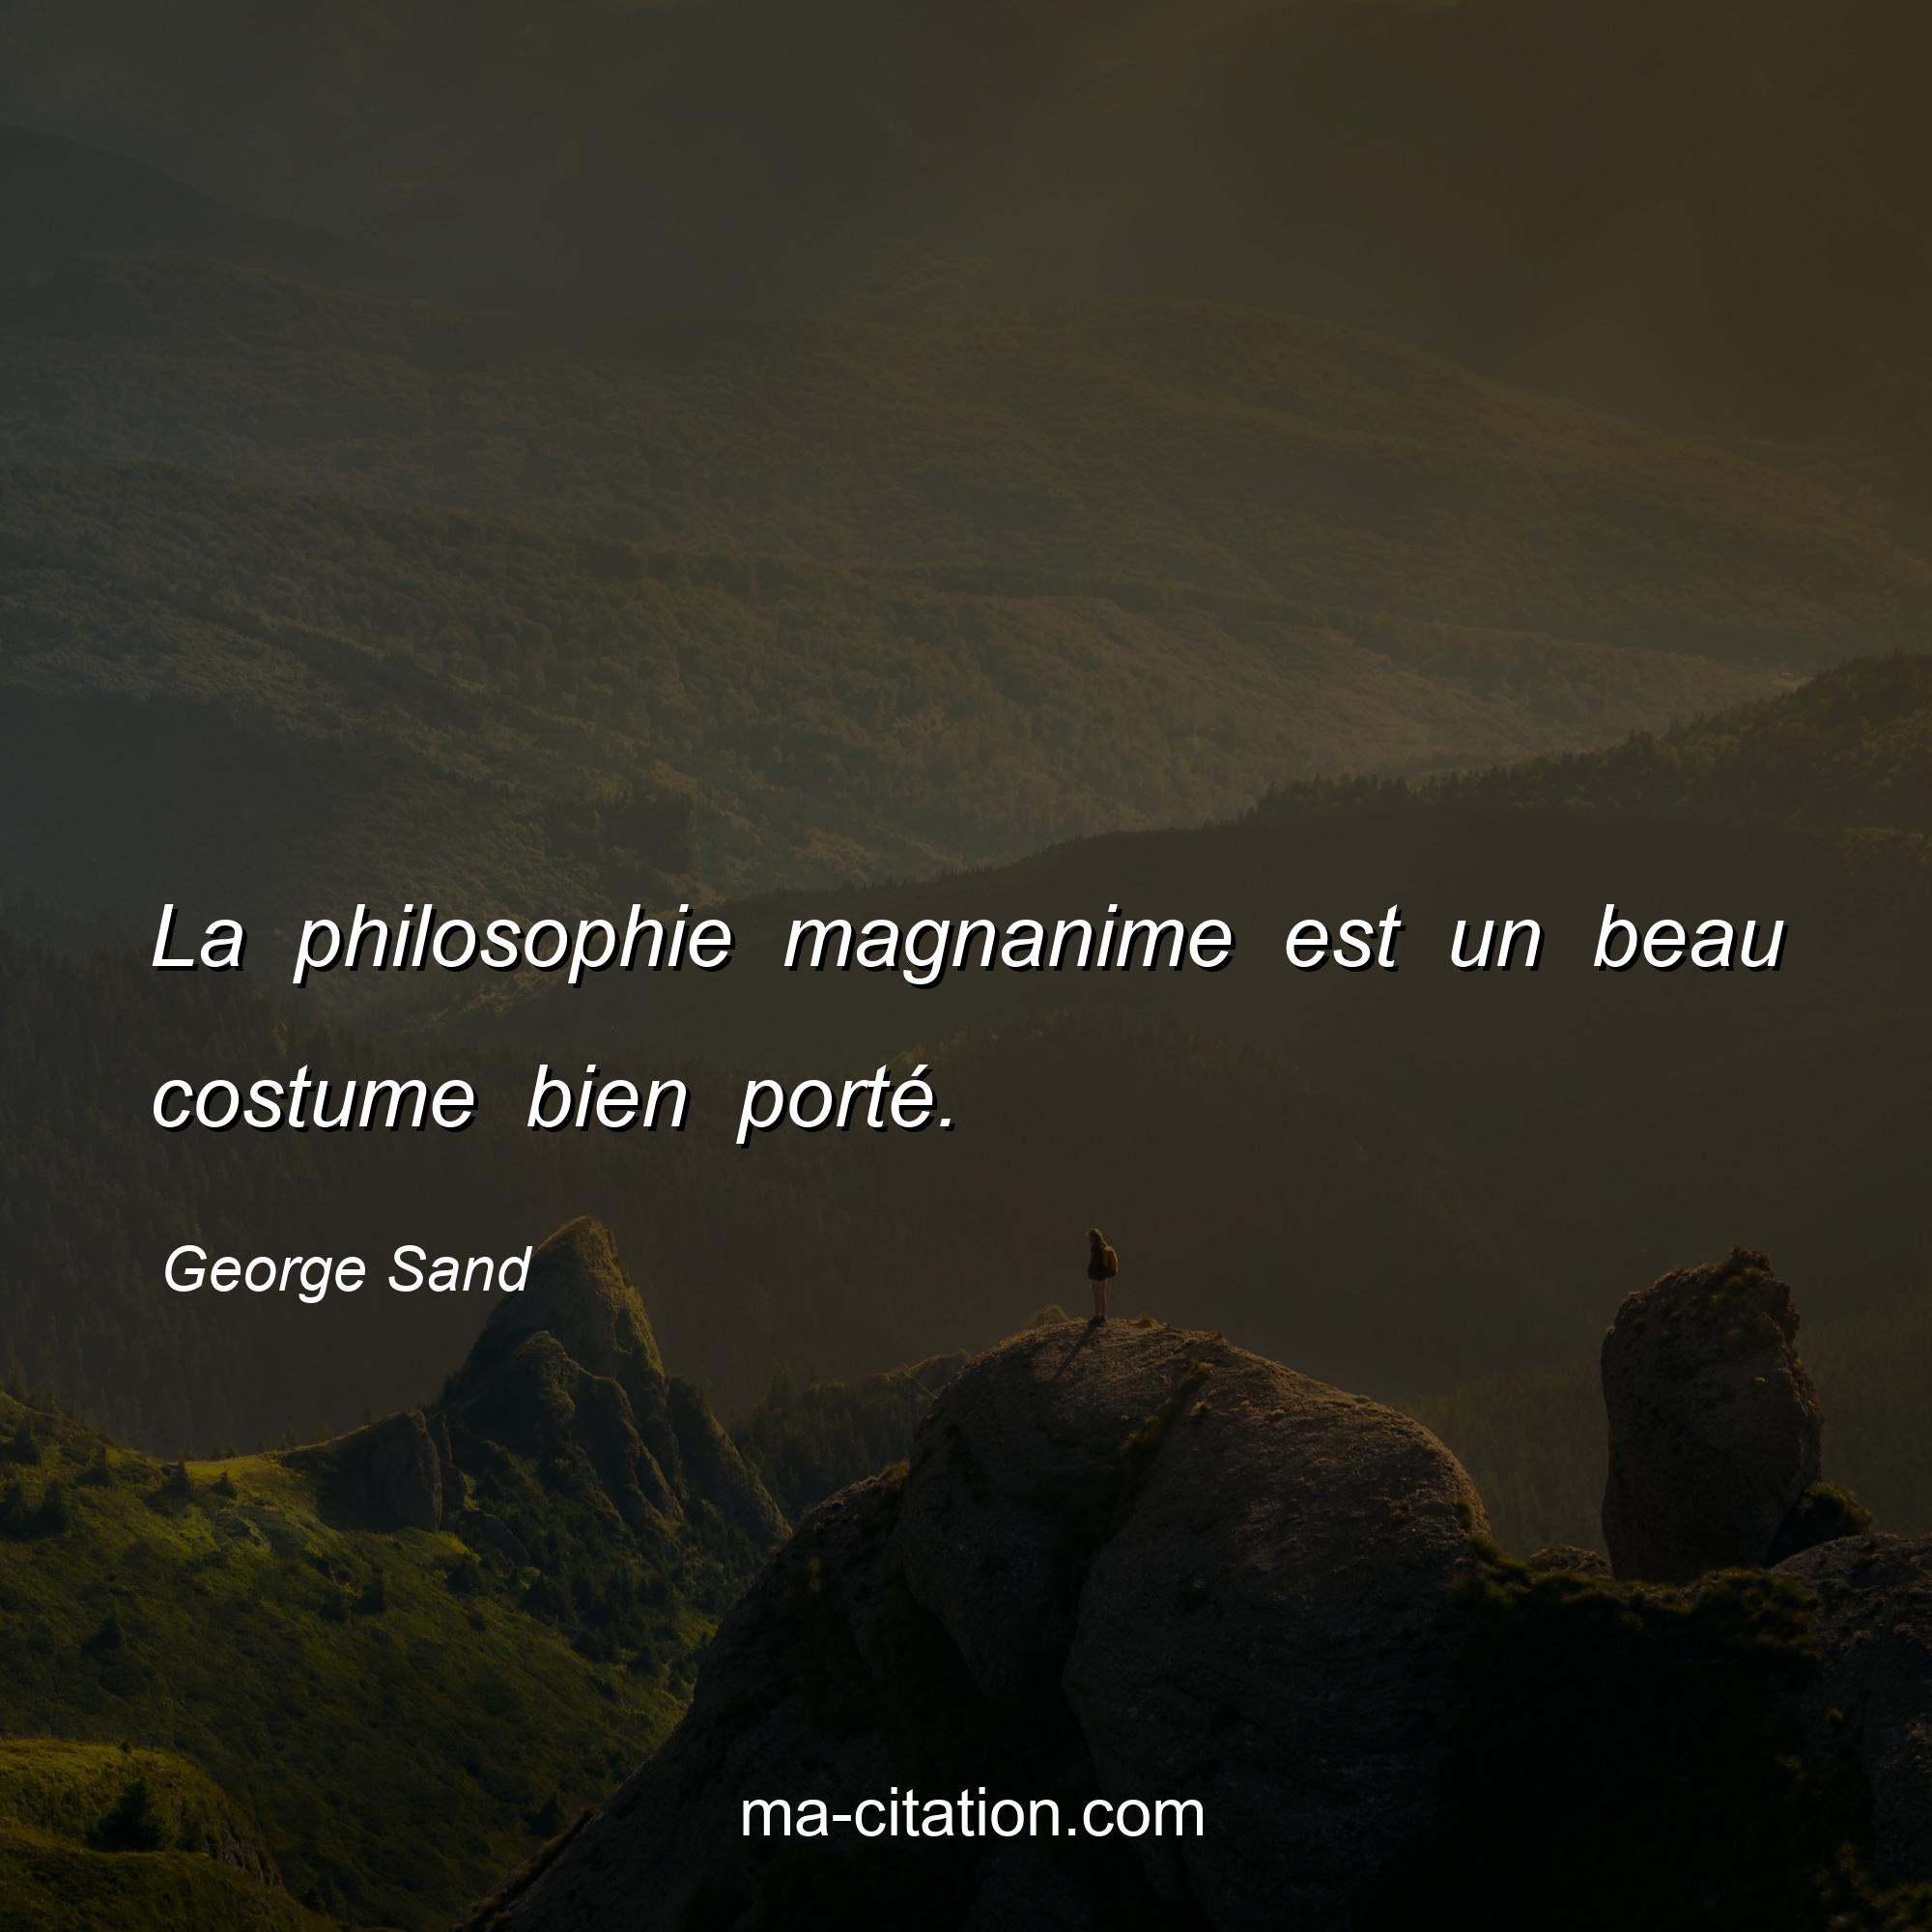 George Sand : La philosophie magnanime est un beau costume bien porté.